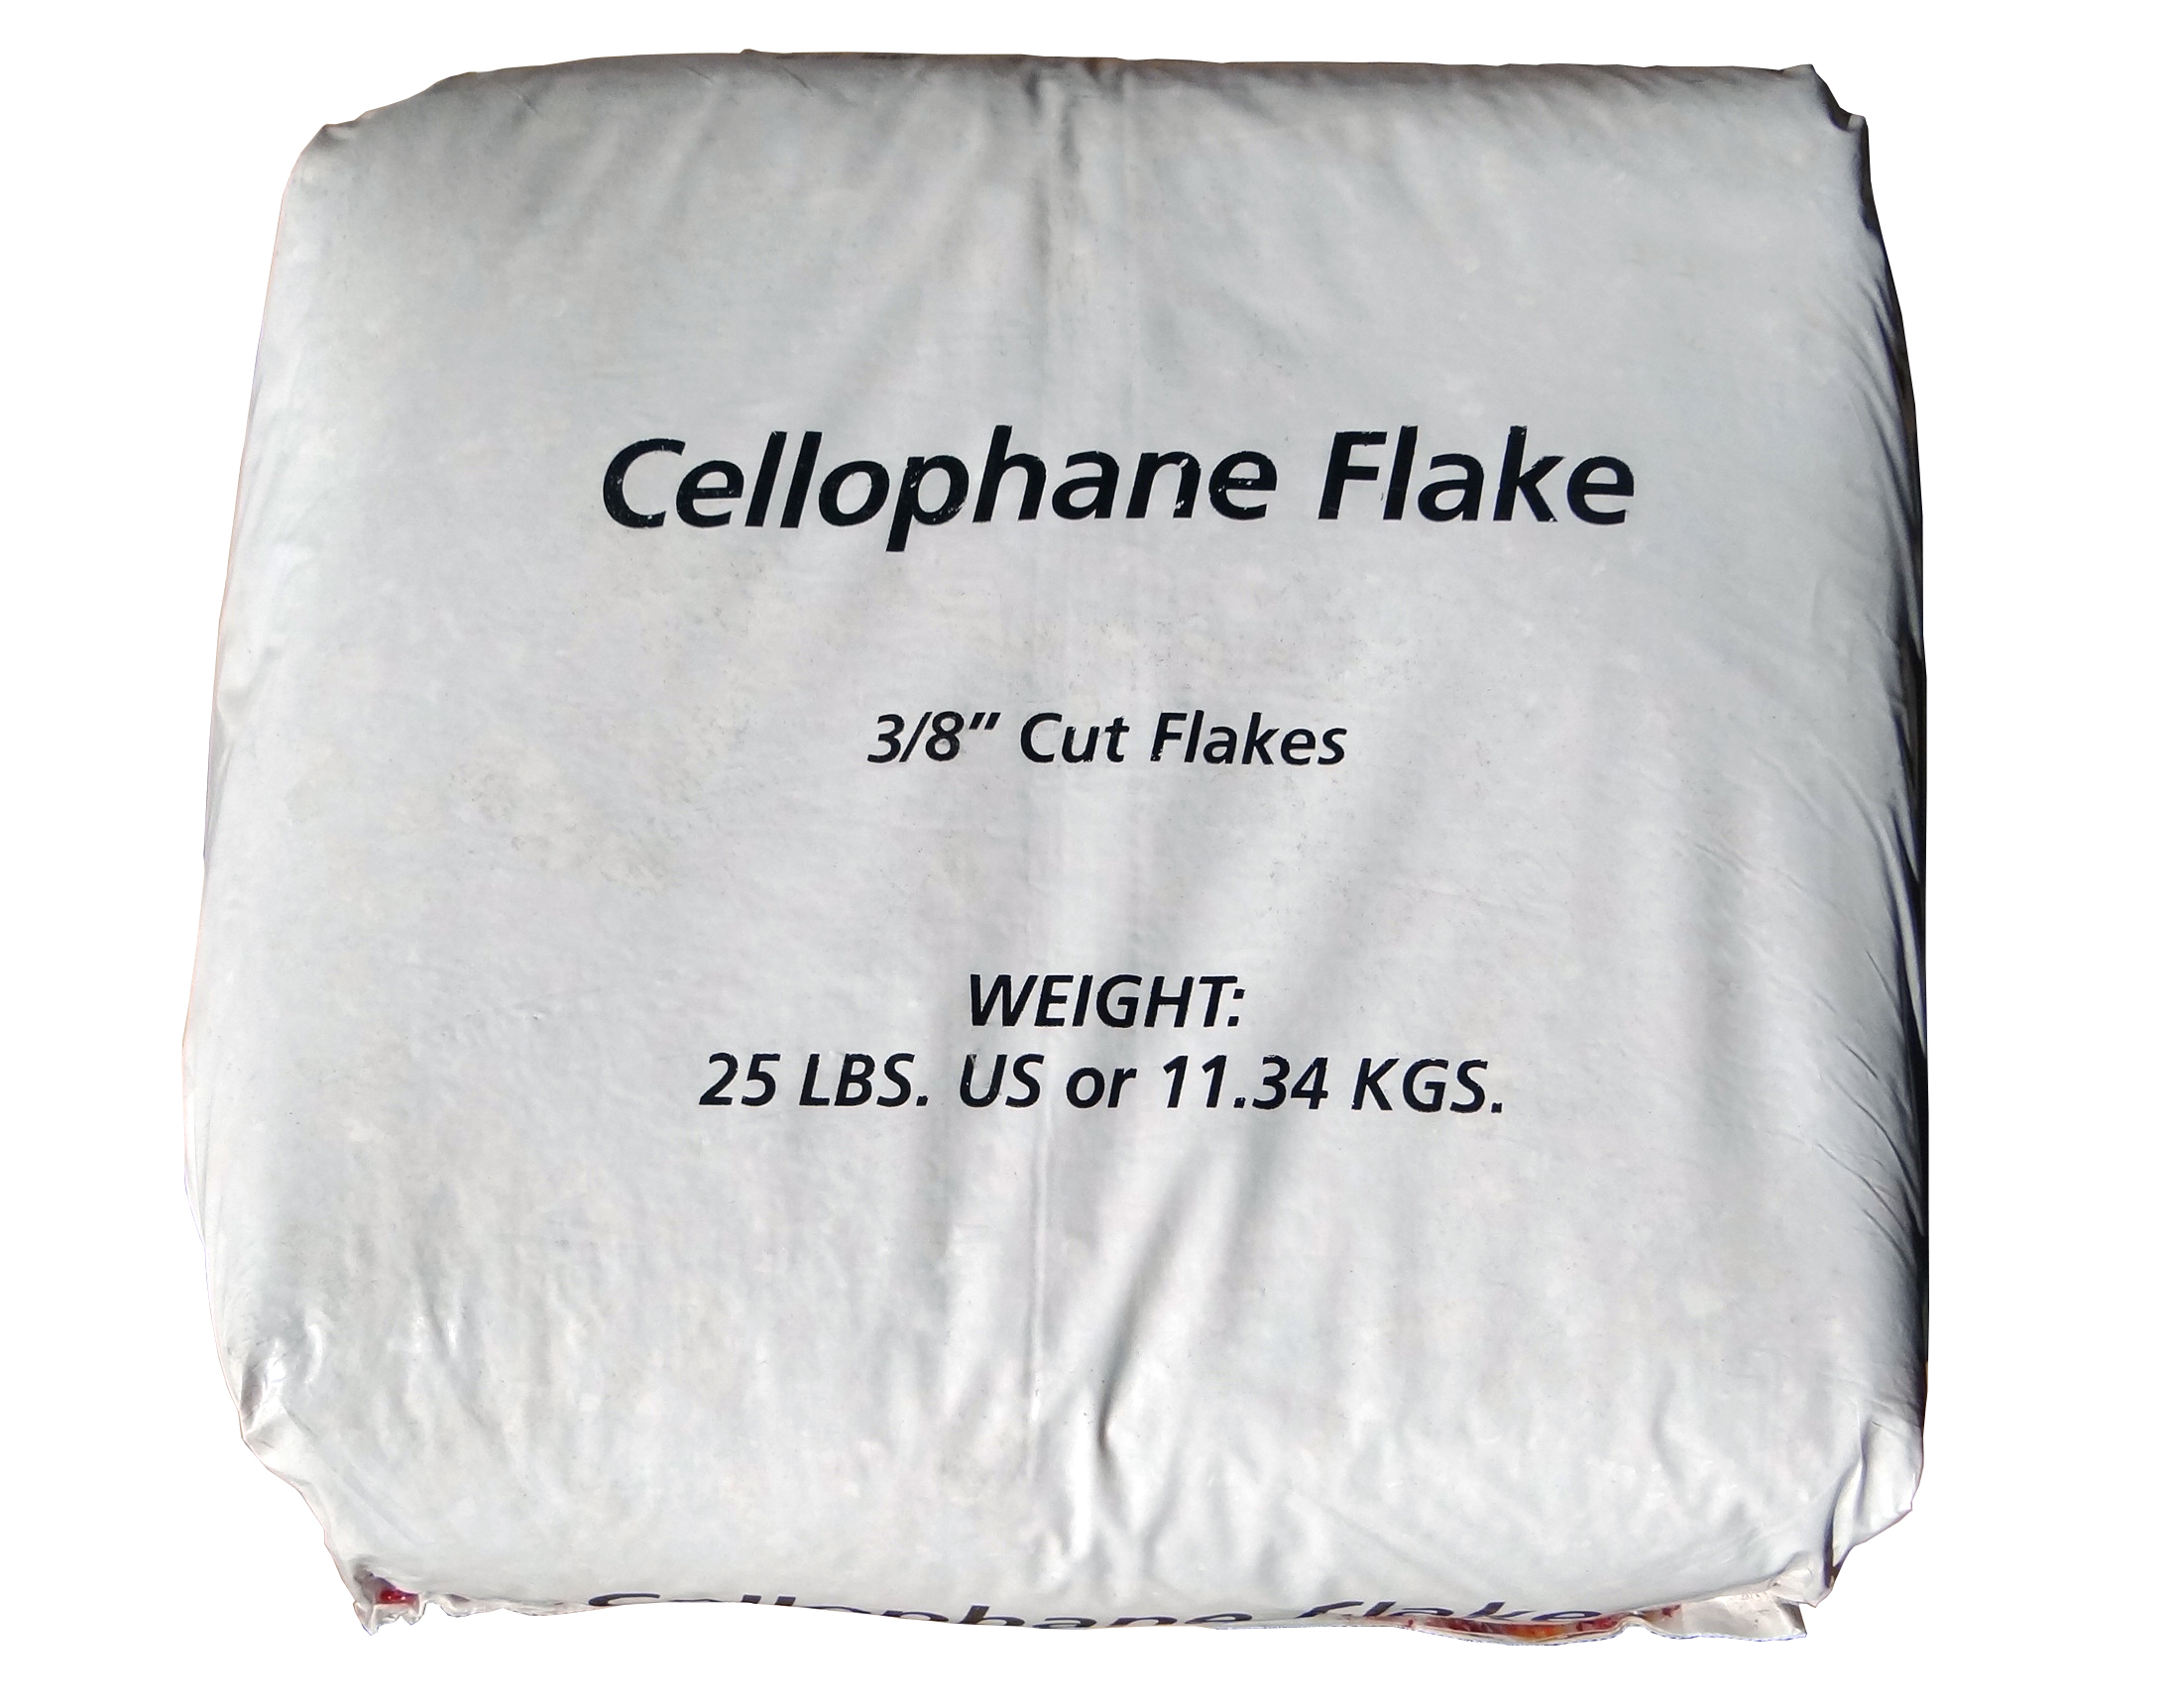 a sack of cellophane